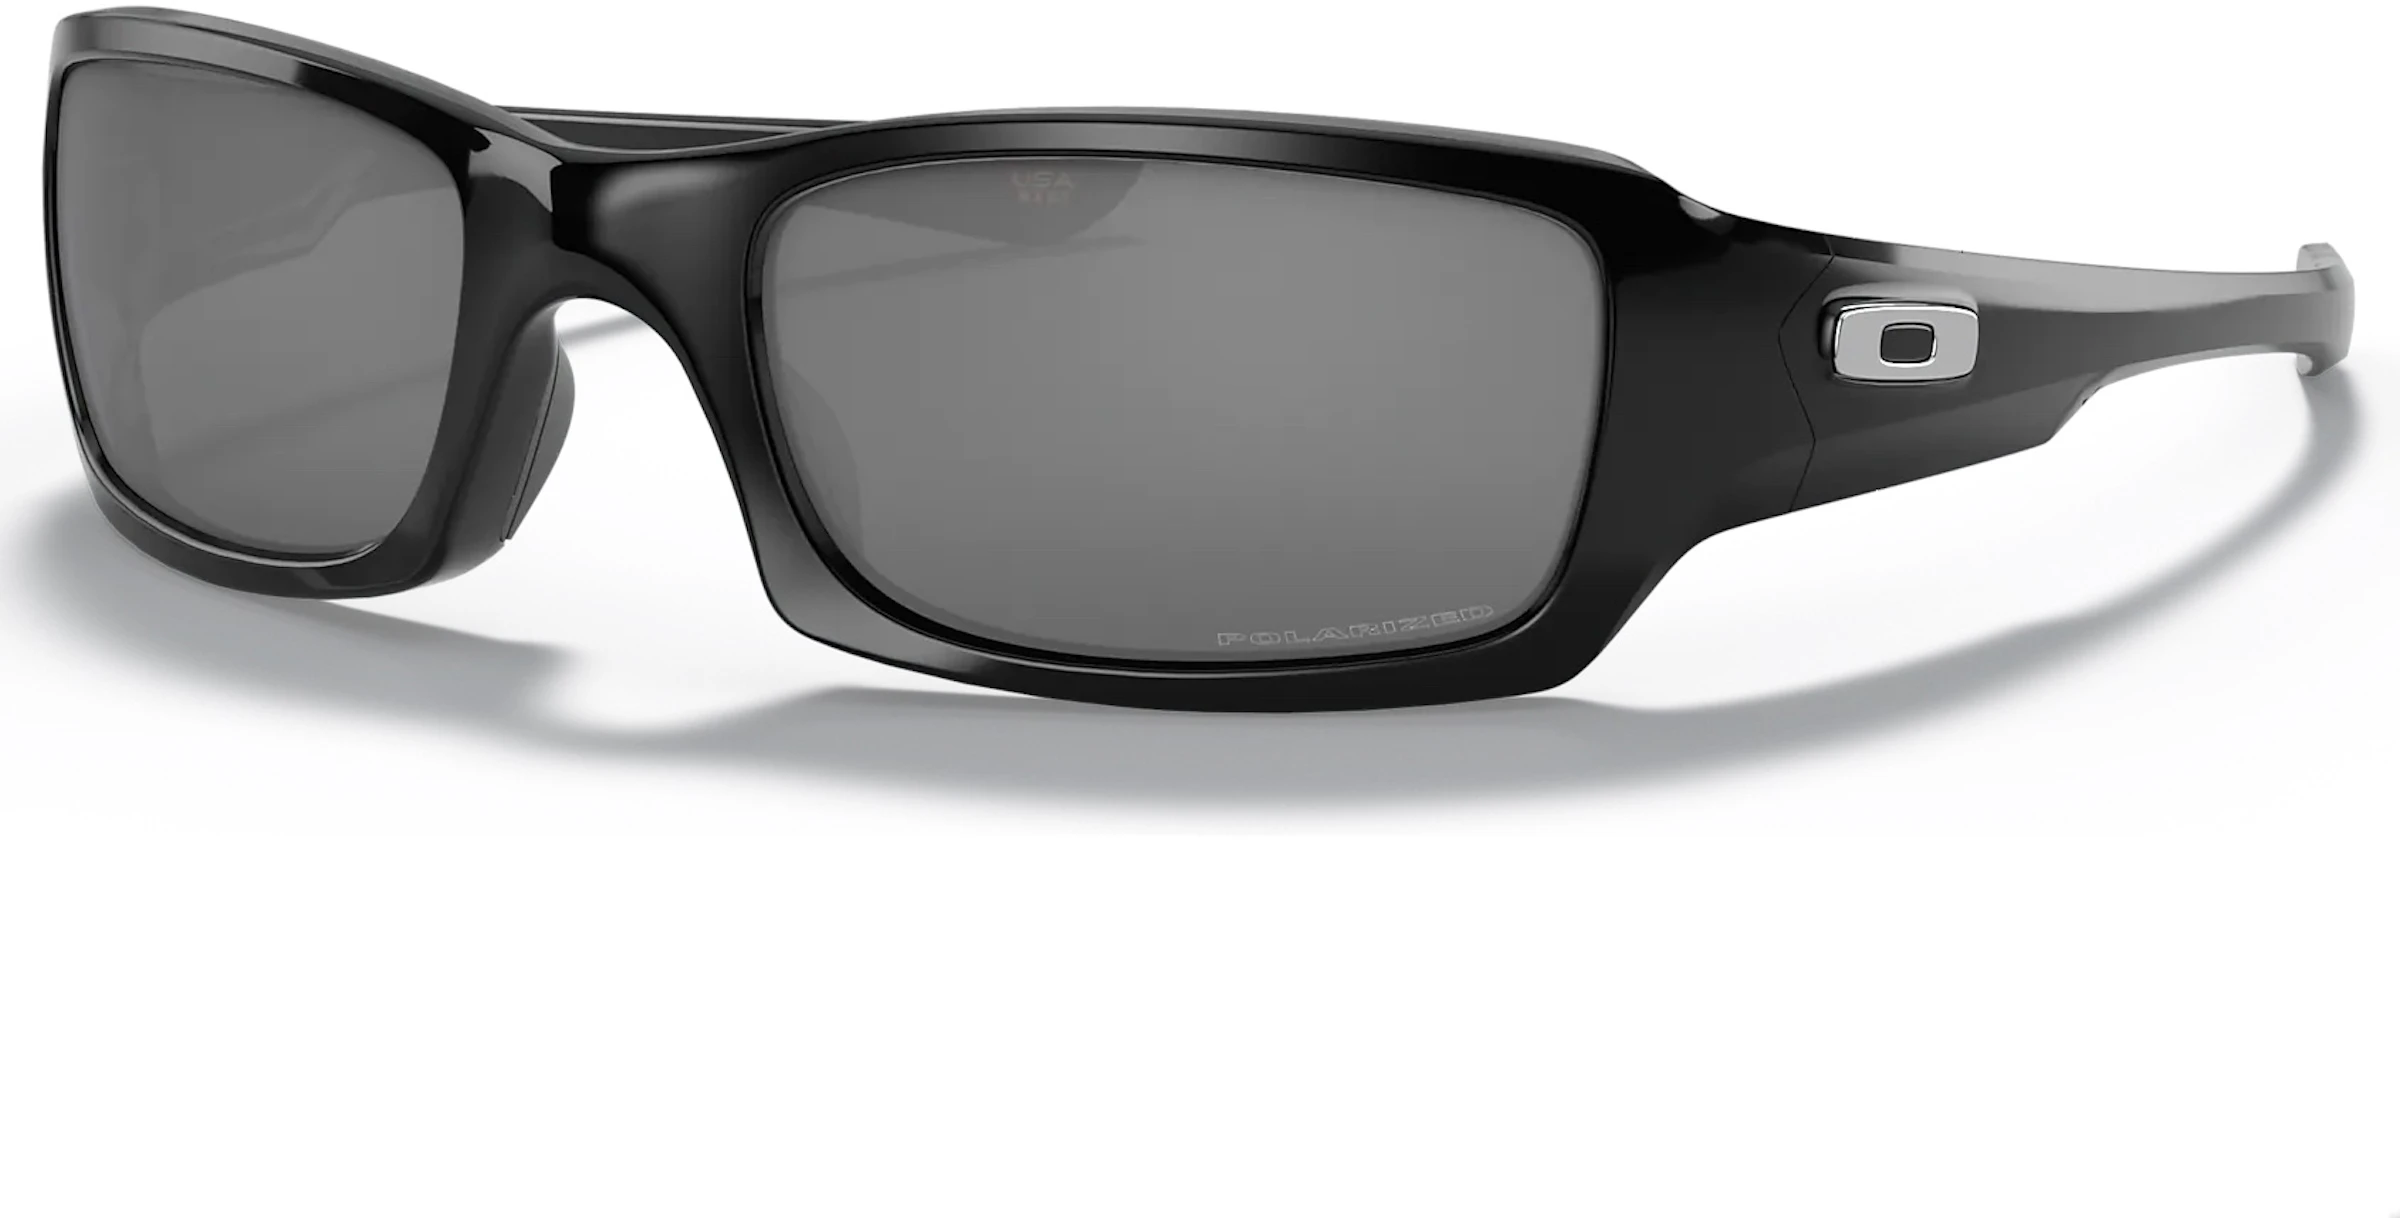 Oakley Five Squared Sunglasses Polished Black/Black Iridium Polarized - US